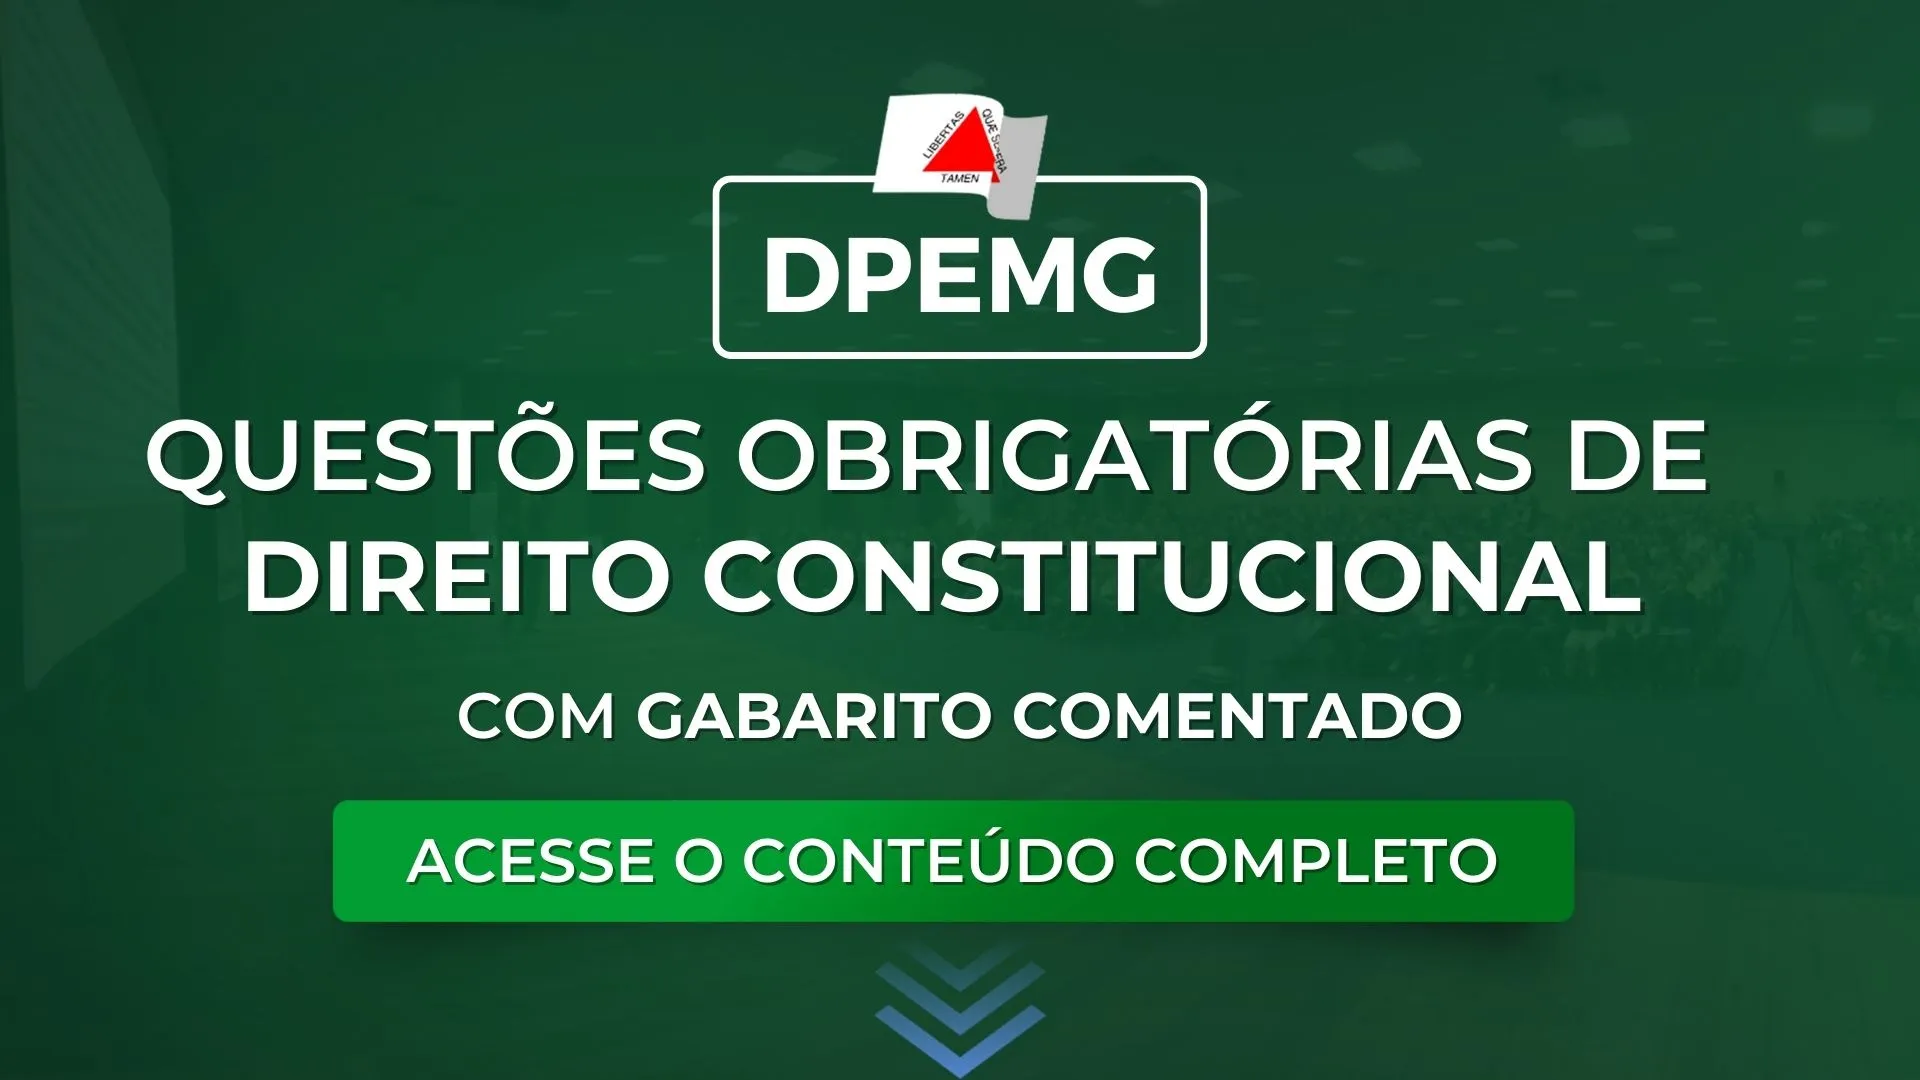 DPEMG: Questões obrigatórias de Constitucional com gabarito comentado para o concurso